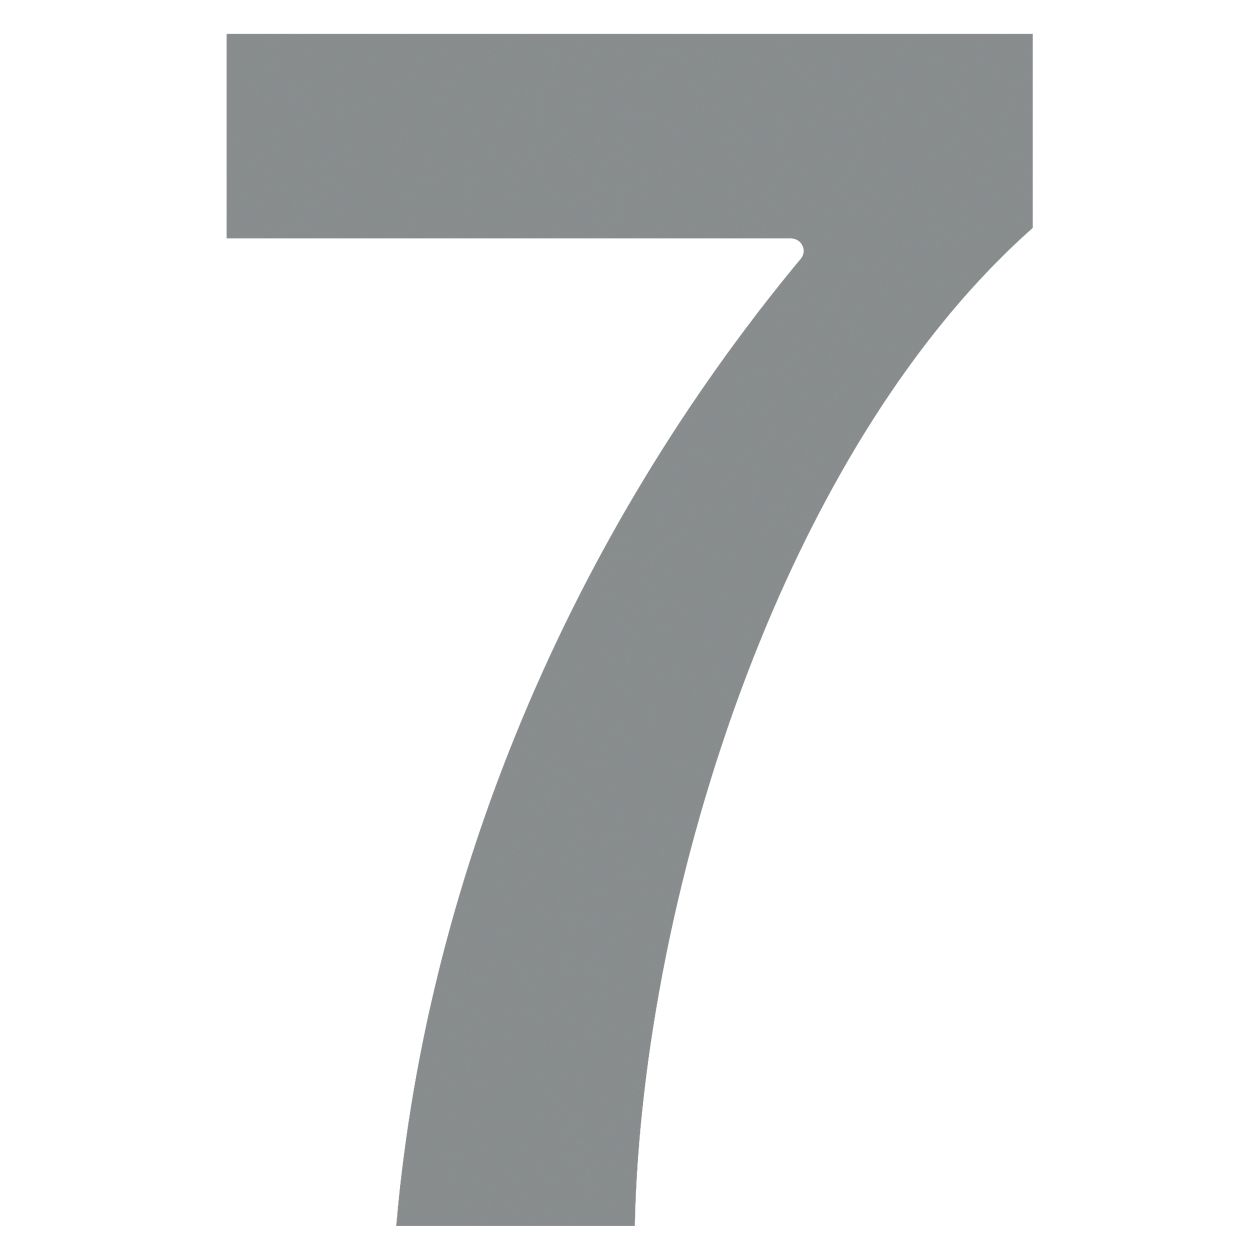 Numer na dom "7" szary metaliczny